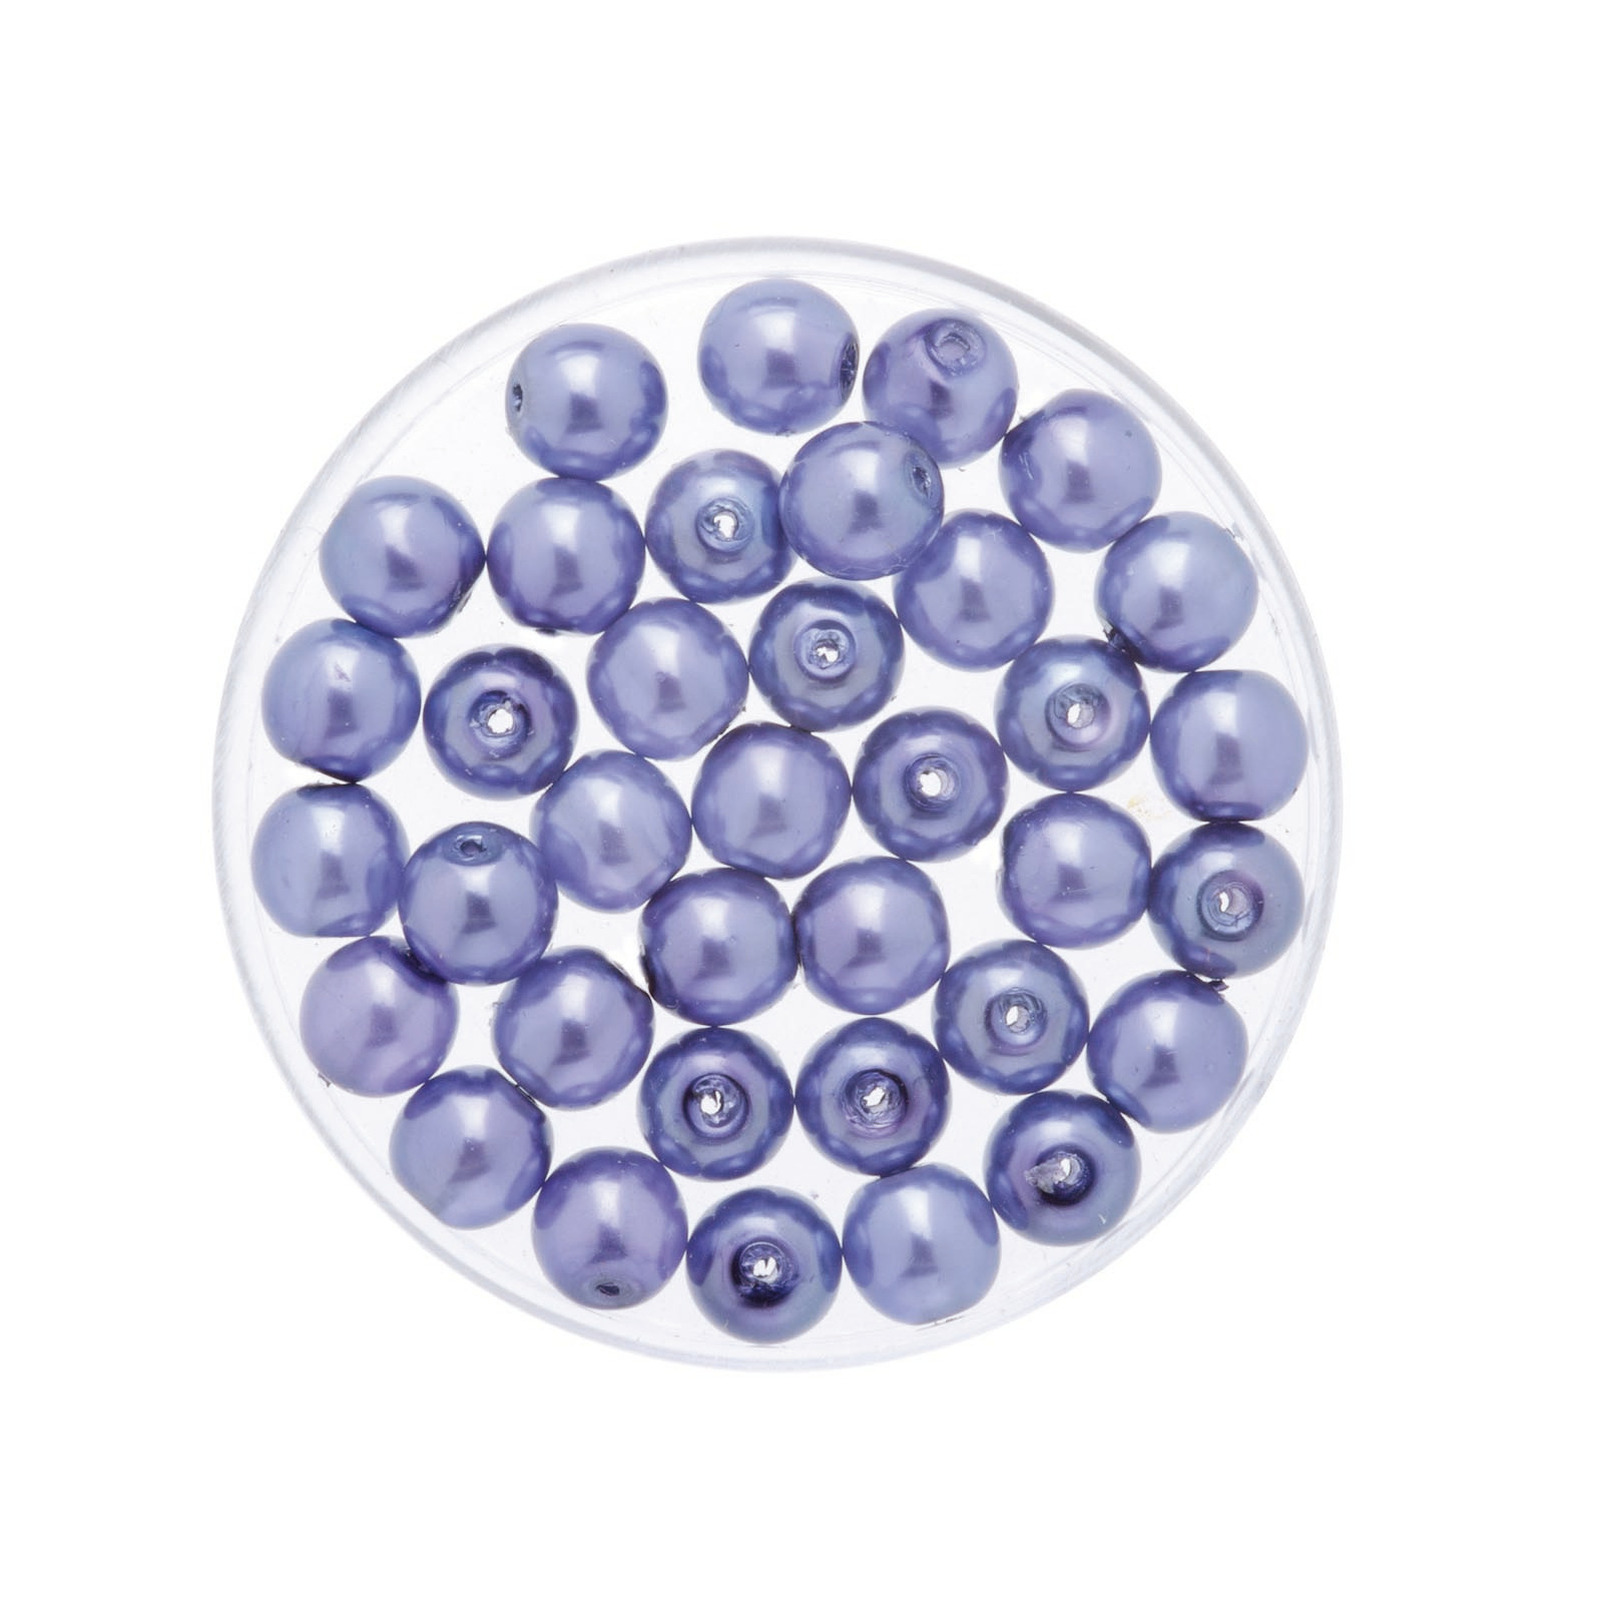 150x stuks sieraden maken Boheemse glaskralen in het transparant lila paars van 6 mm